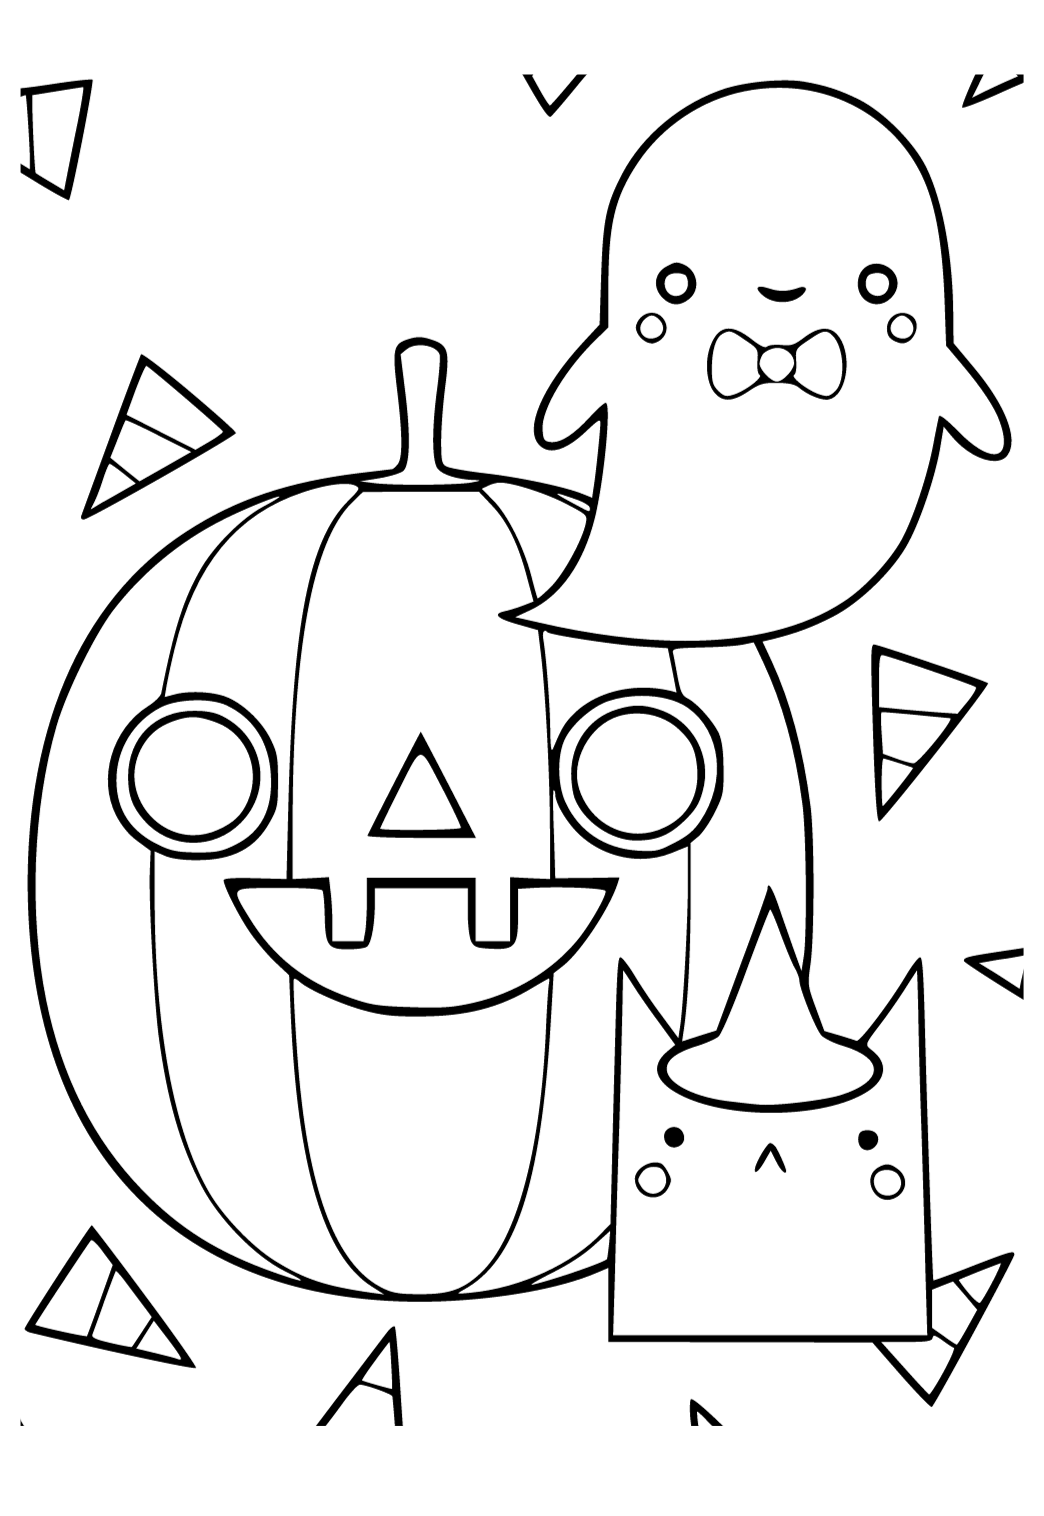 Desenhos fáceis para desenhar Halloween 7